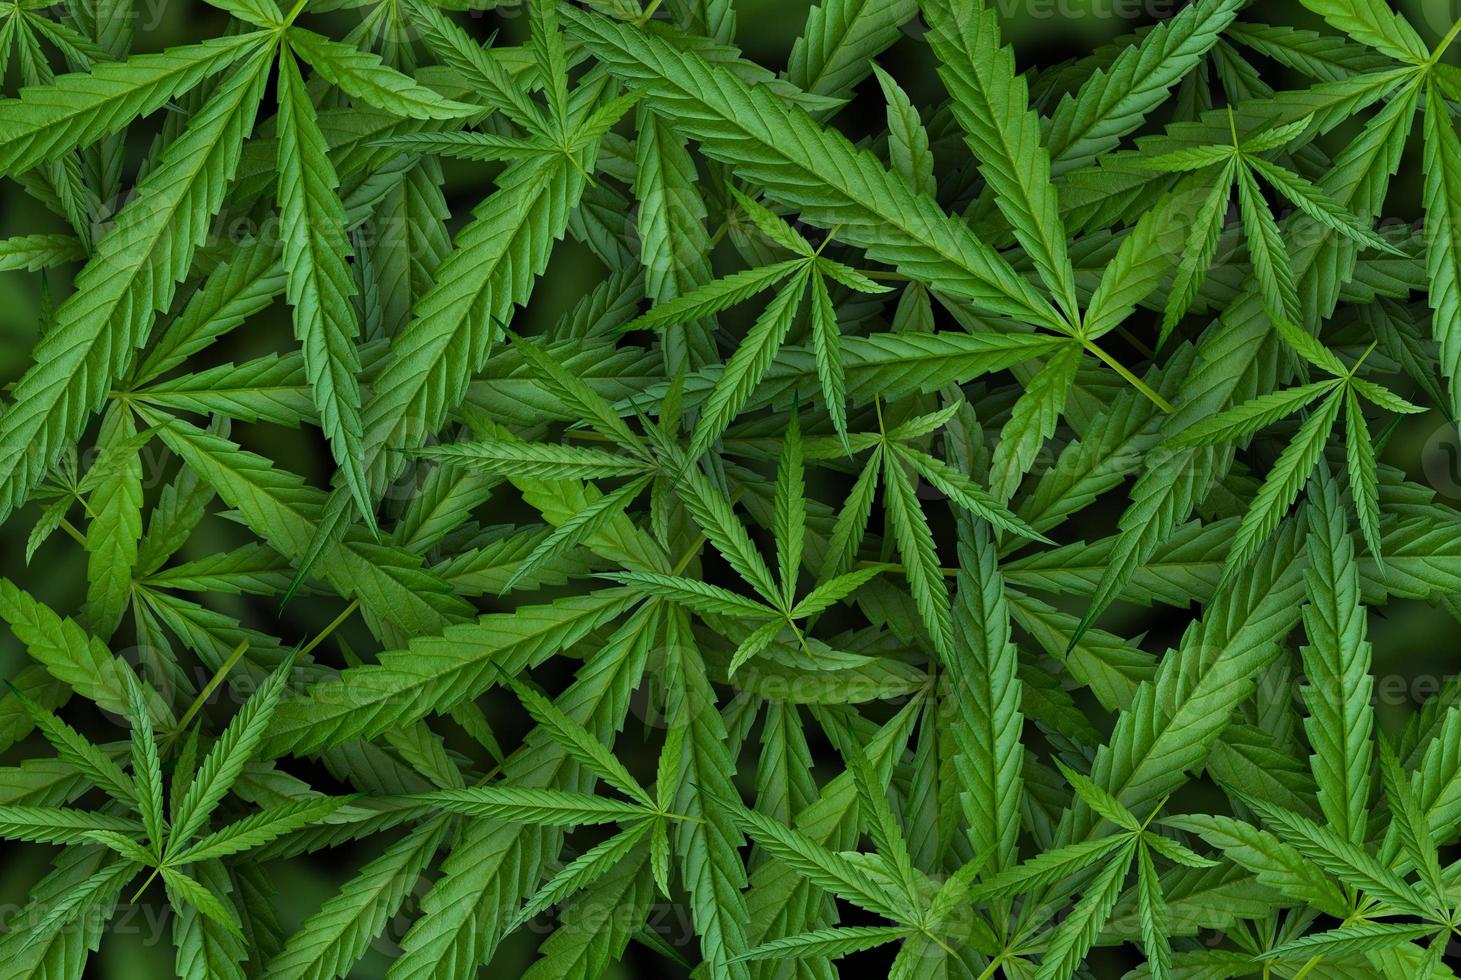 illustrazioni di foglie di marijuana su sfondo scuro di cannabis foto